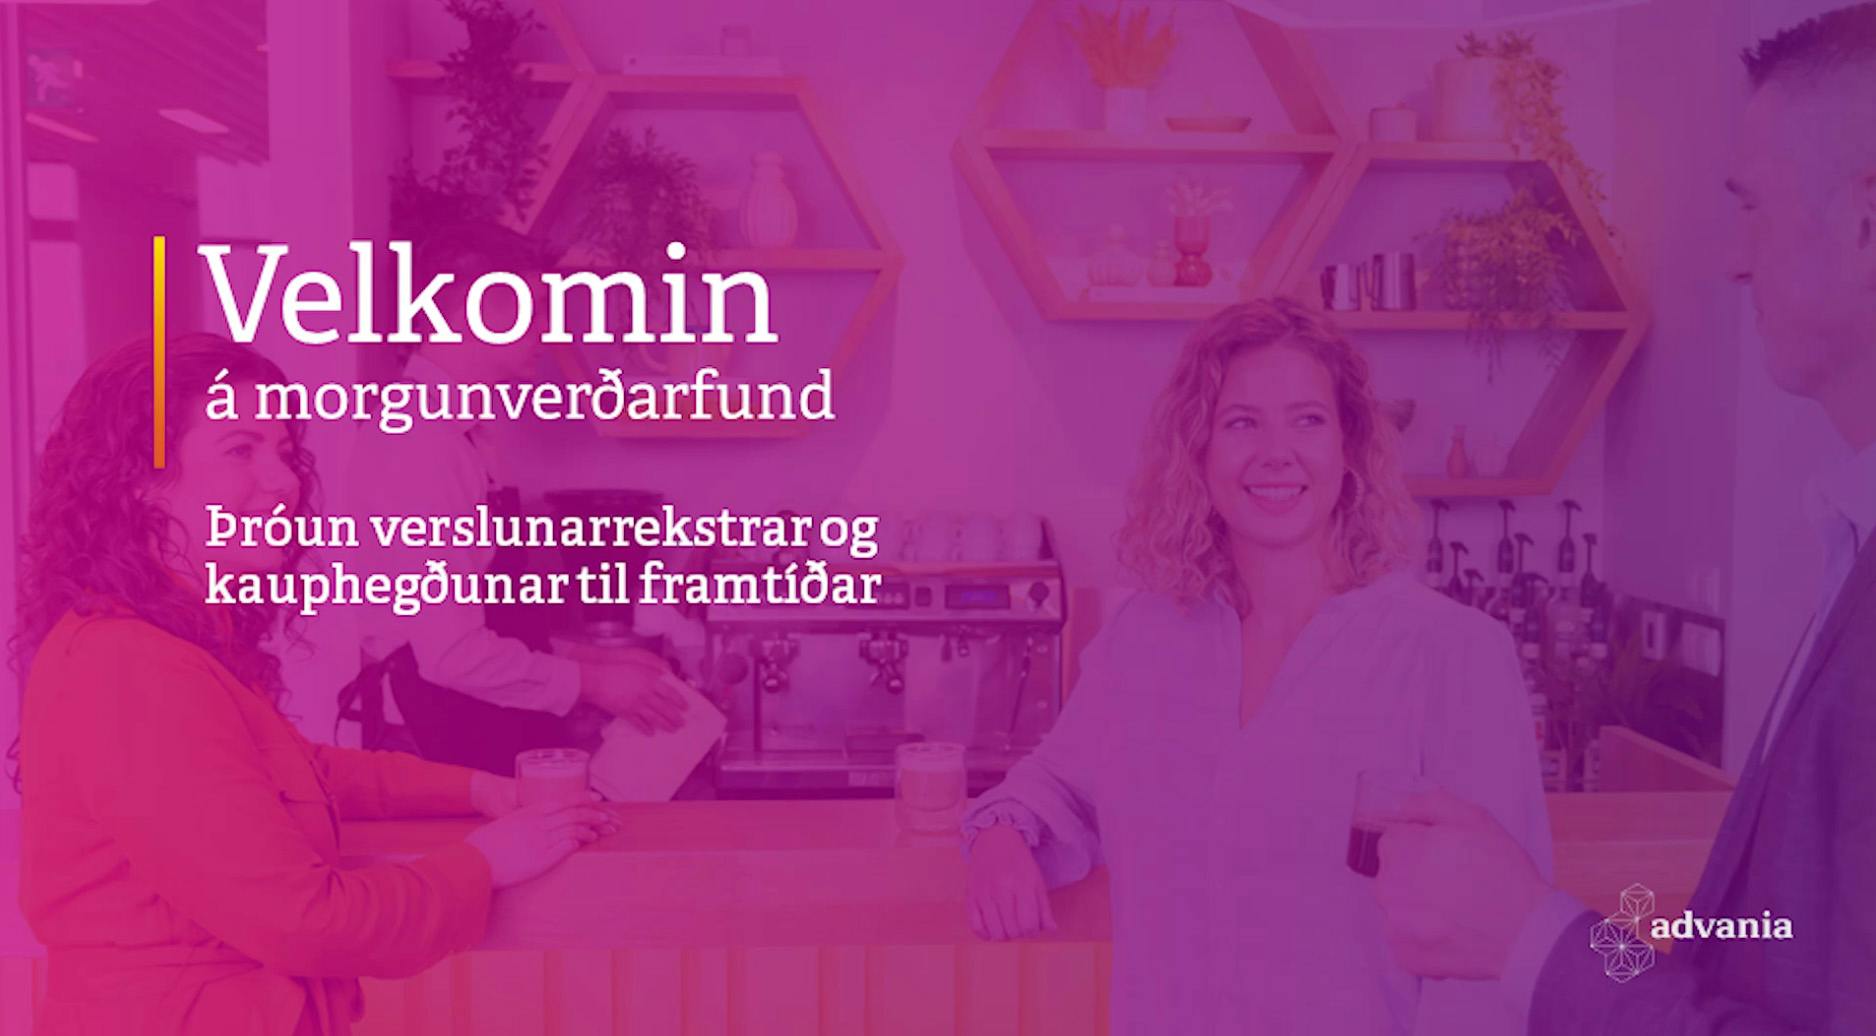 Image for event - Þróun verslunarrekstrar og kauphegðunar til framtíðar